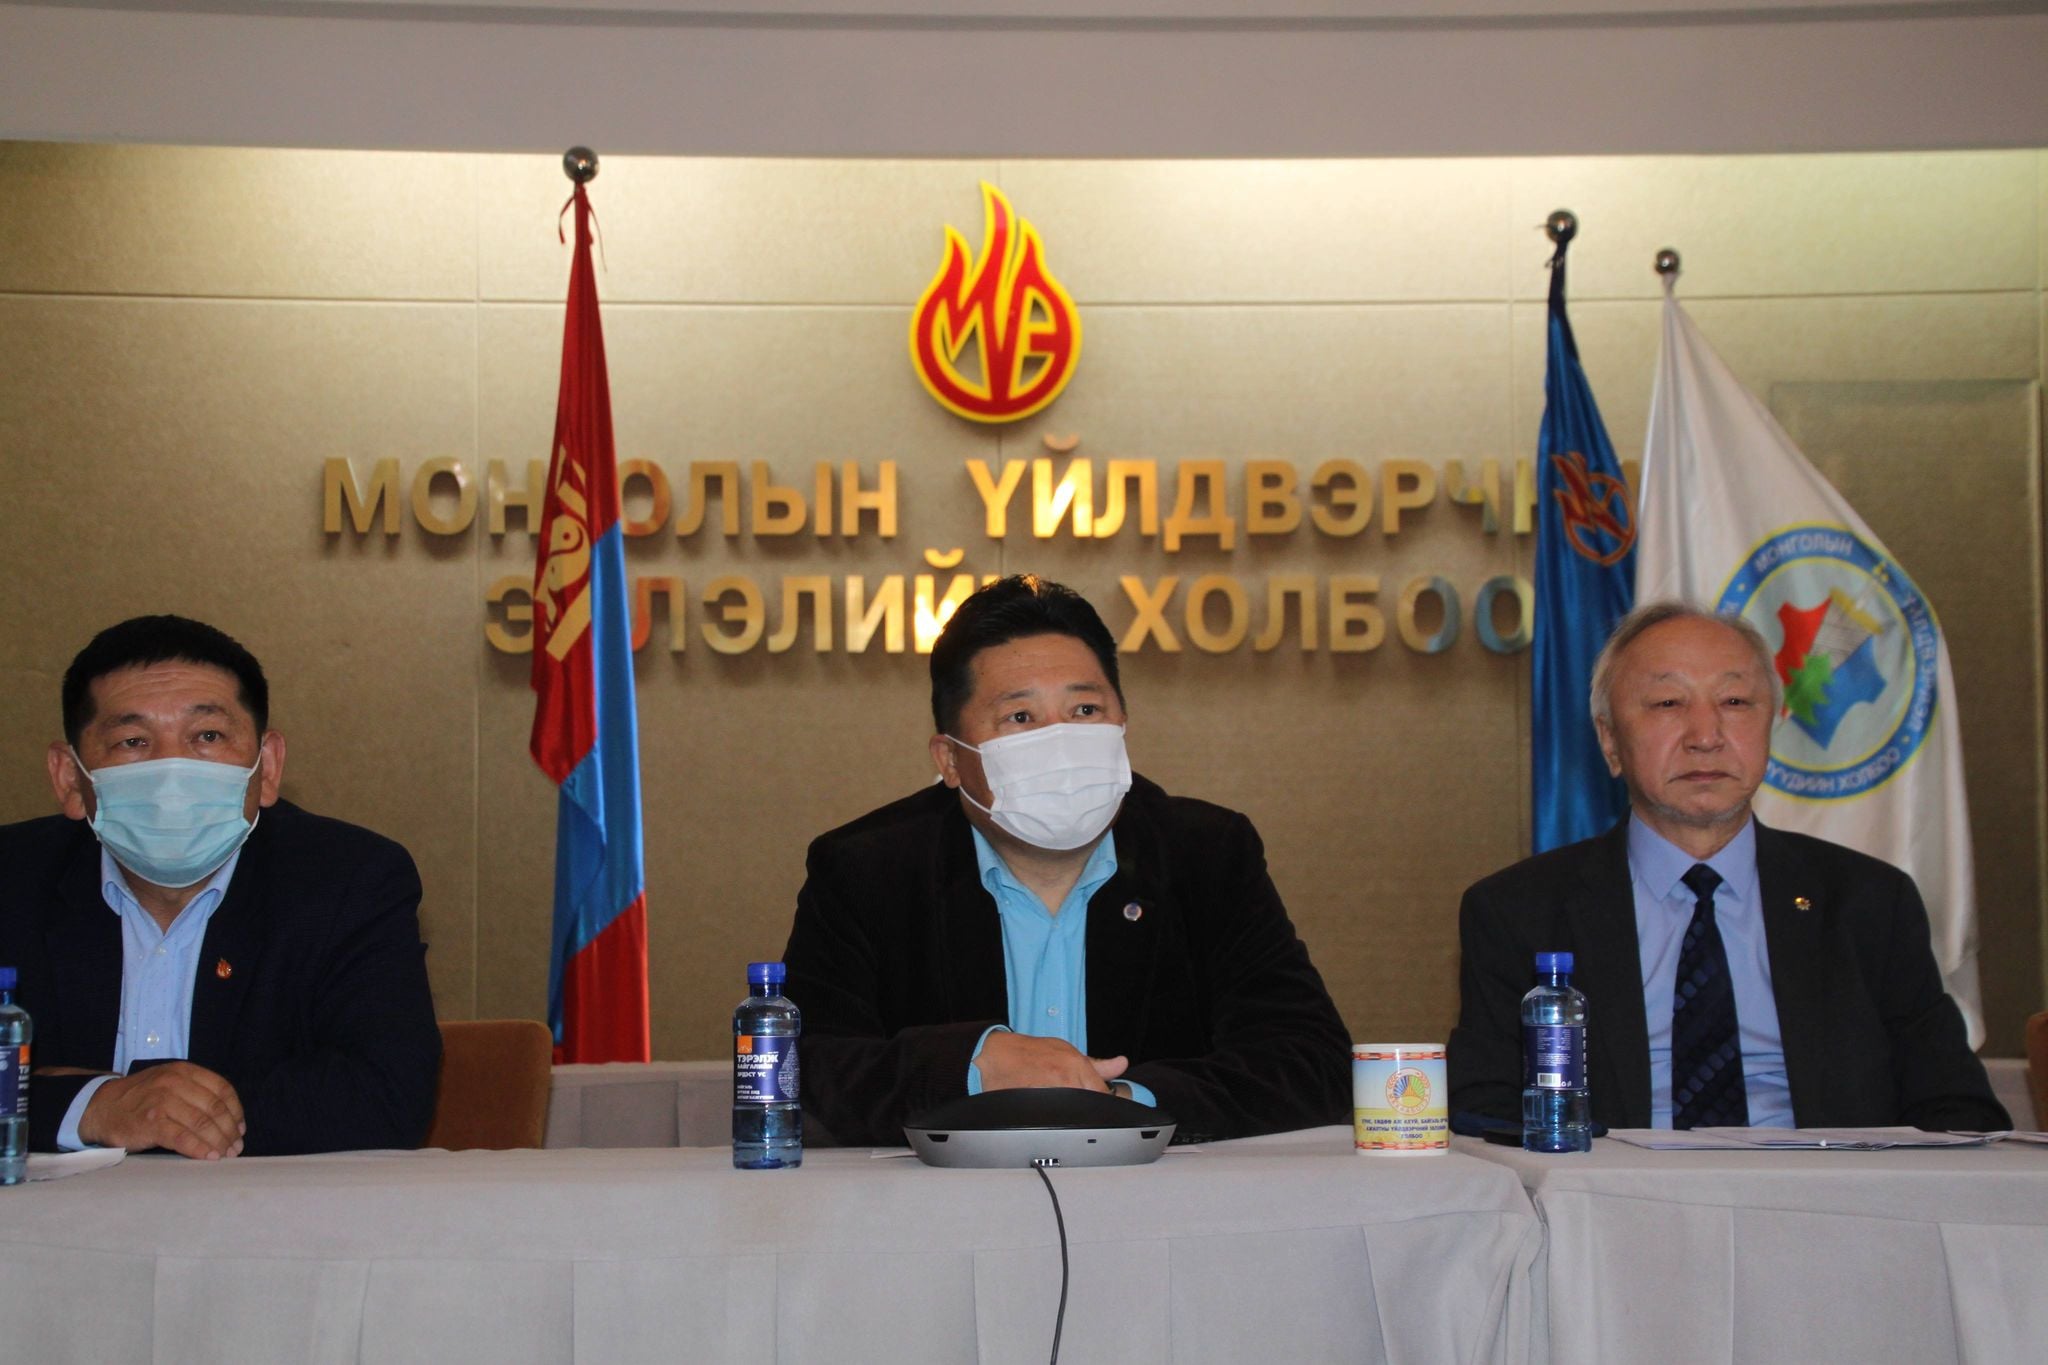 Монголын Үйлдвэрлэл Үйлдвэрчний Эвлэлийн Холбооны ээлжит Х Бага хурал боллоо